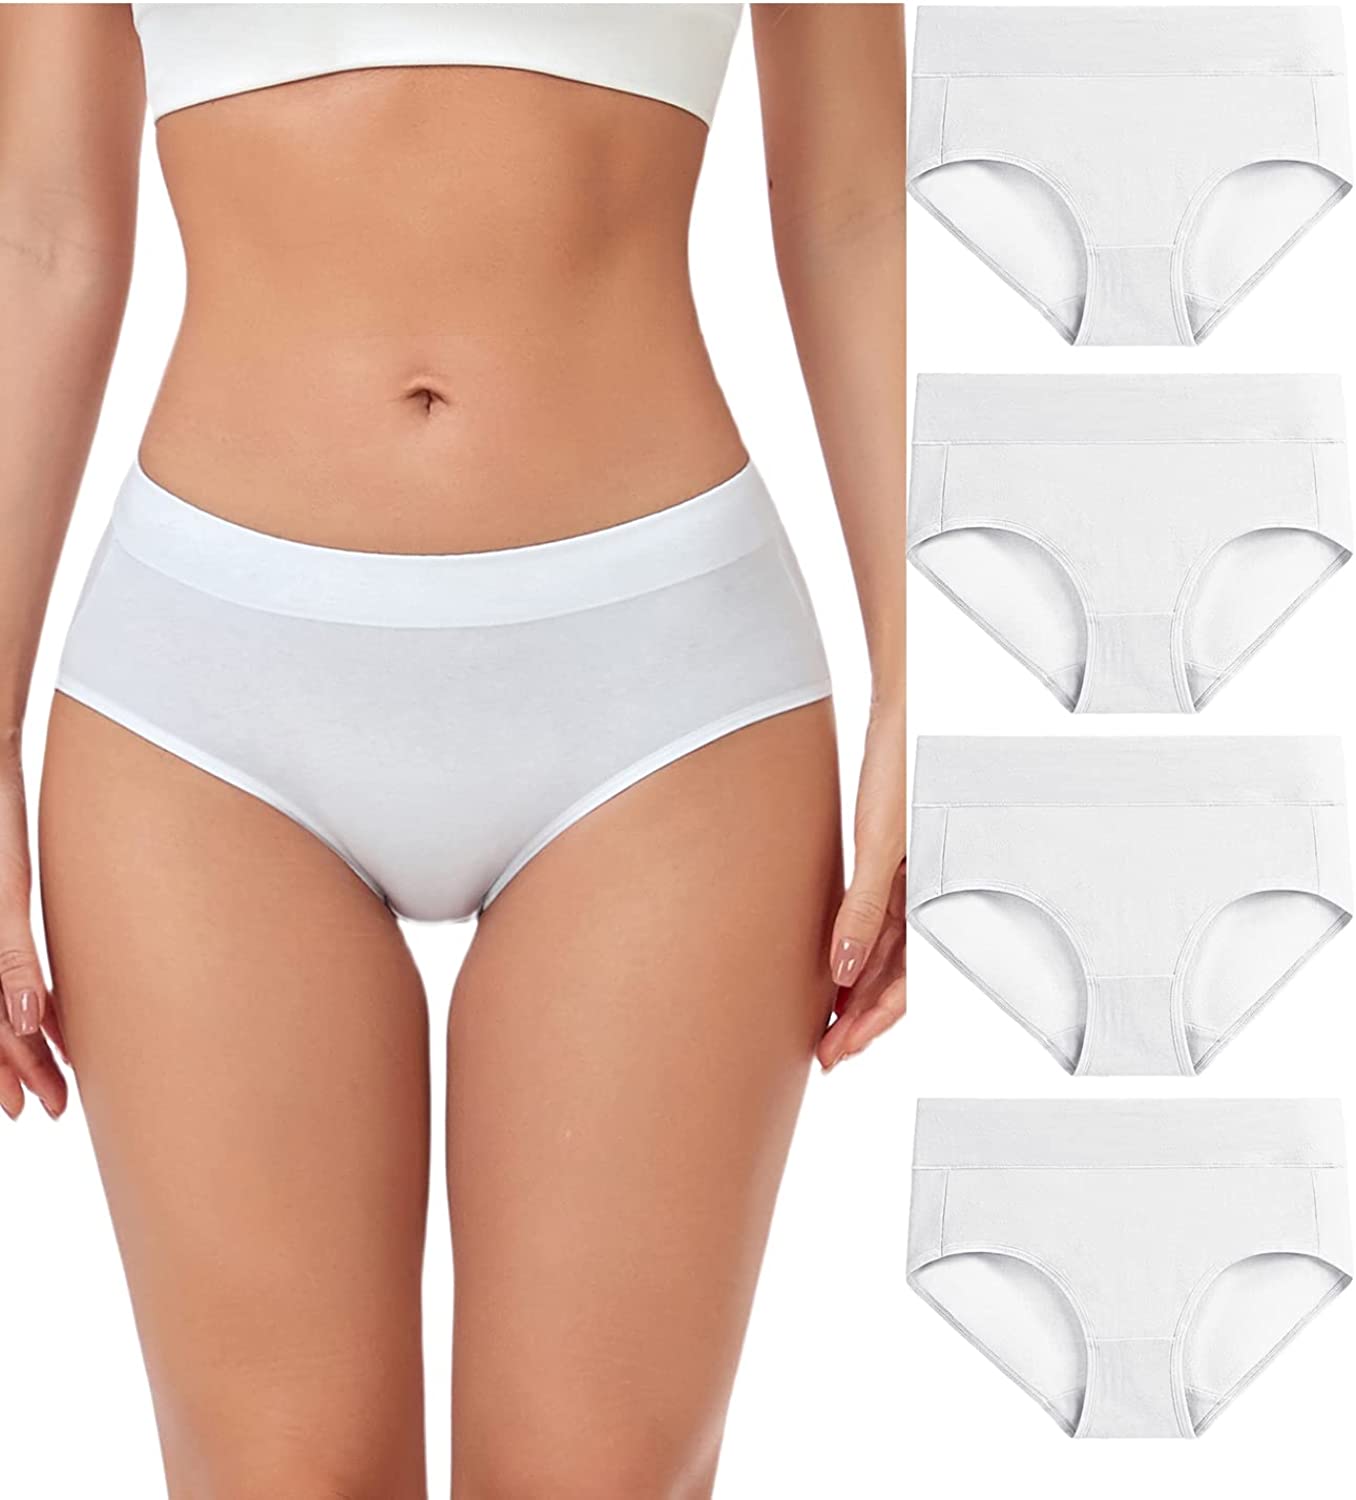 wirarpa Women's Cotton Stretch Underwear Soft Mid Rise Briefs Underpants 4  Pack